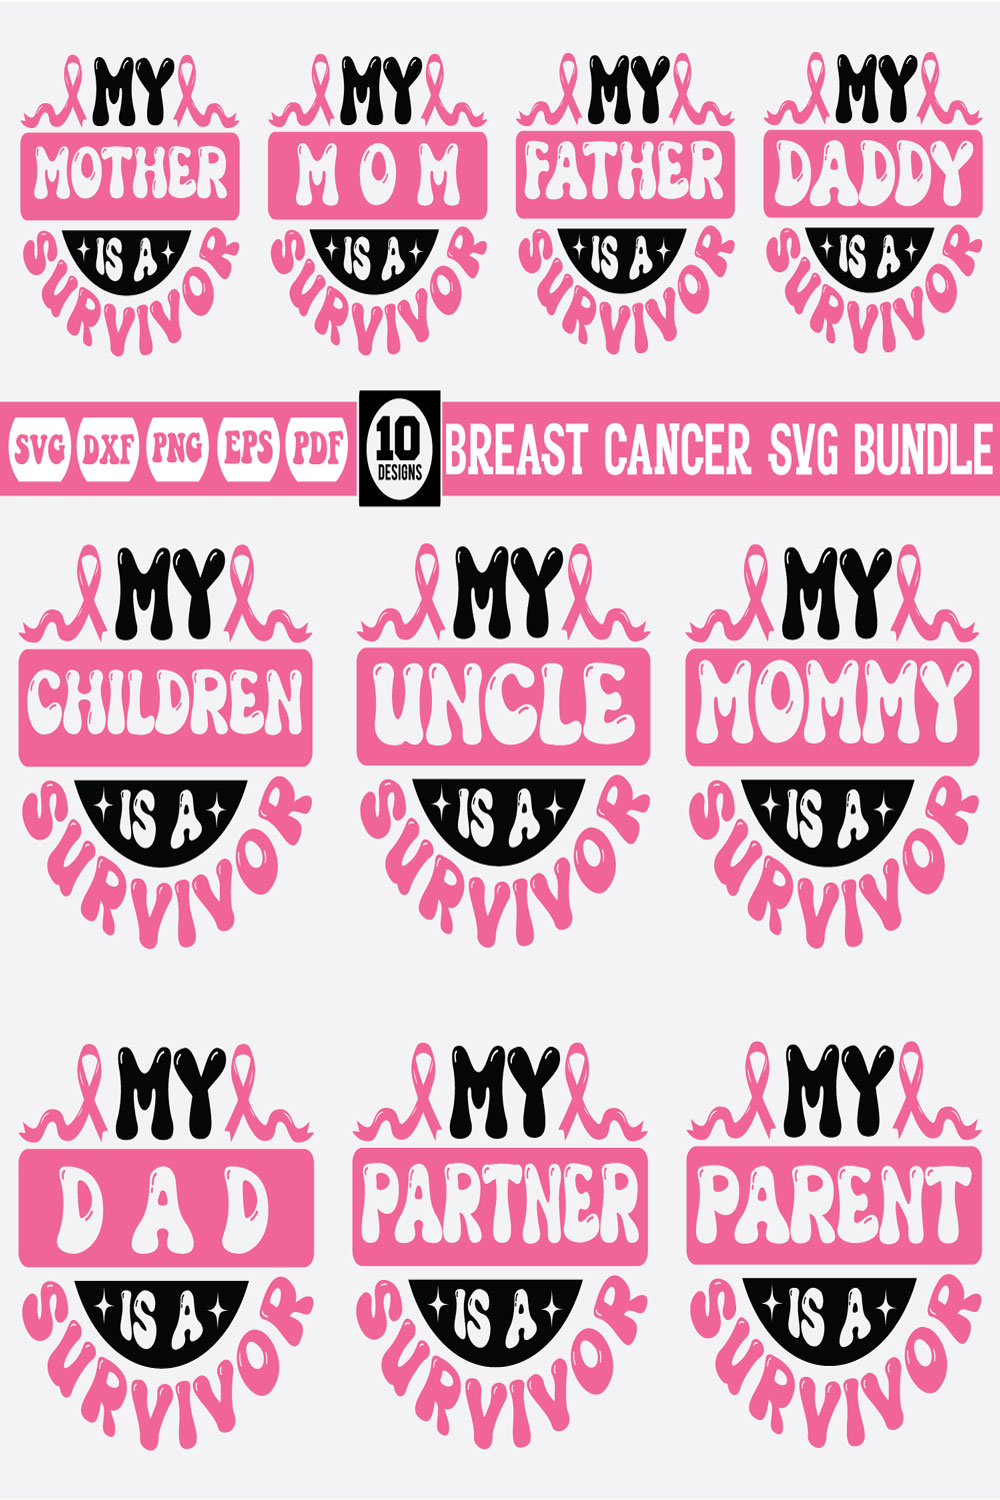 breast cancer svg bundle Vol-2 pinterest preview image.